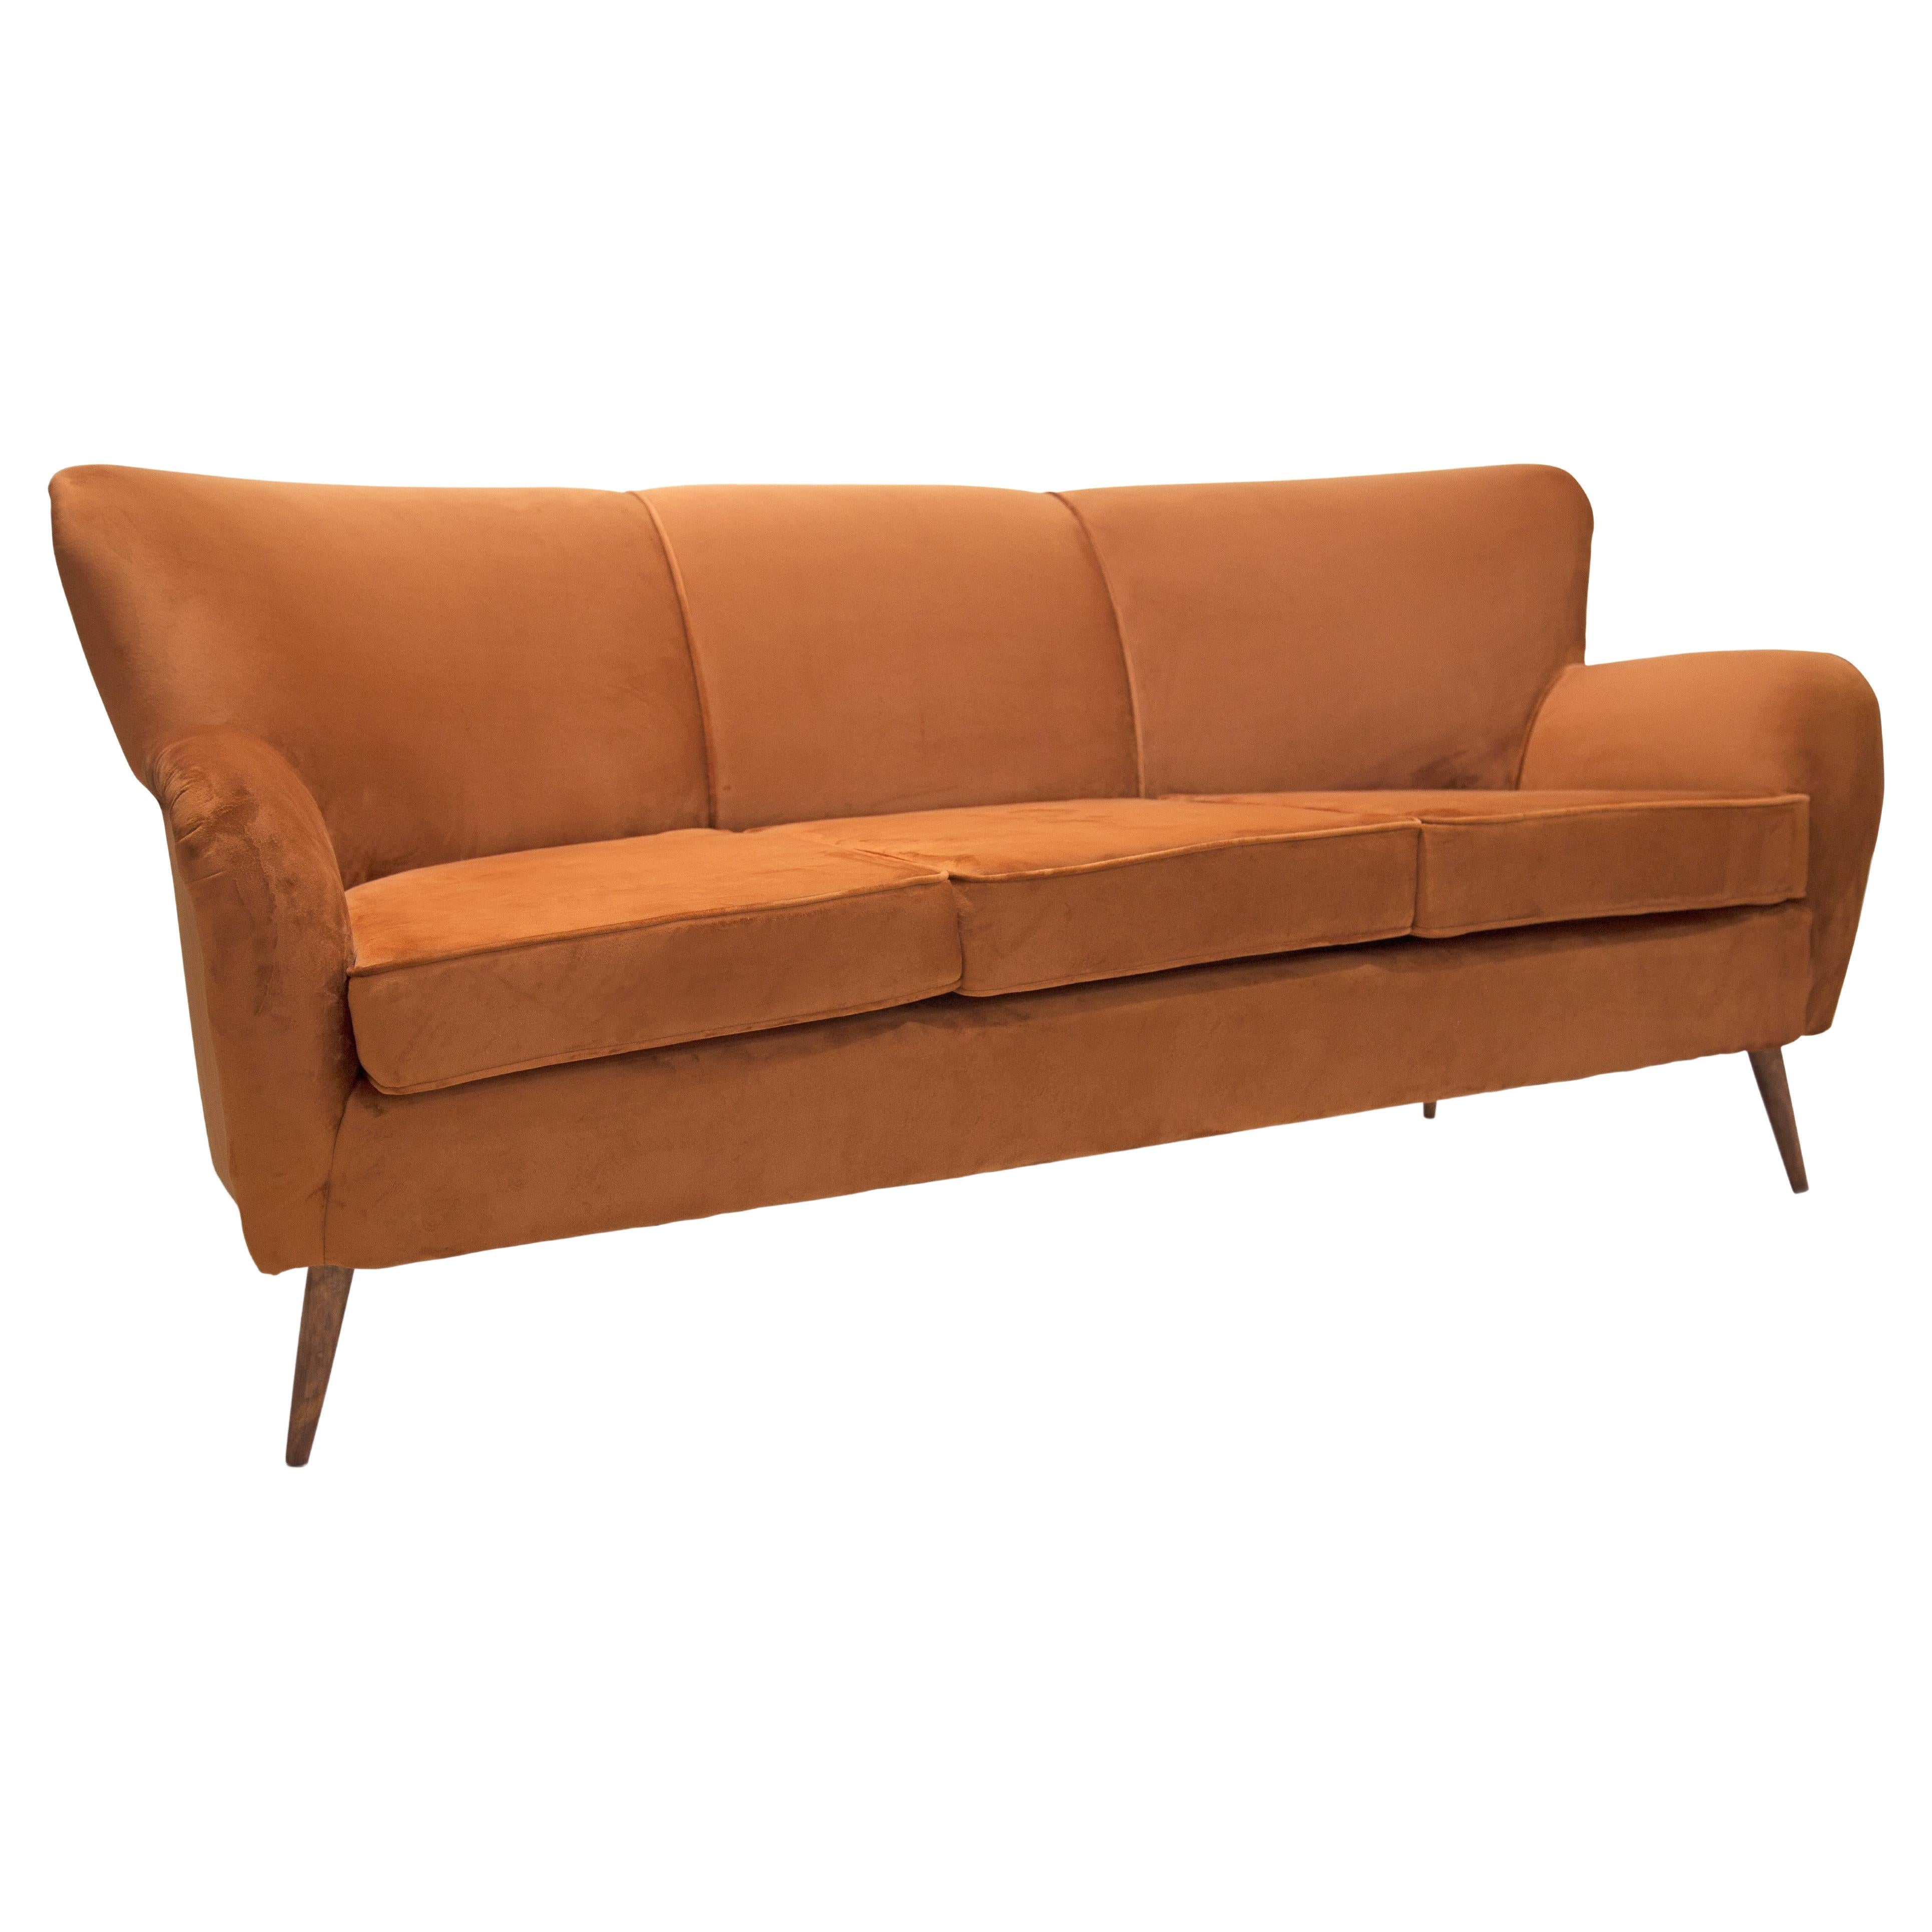 Dieses ab sofort erhältliche Mid Century Modern-Sofa hat eine Struktur aus Hartholz und ist mit ockerfarbenem Samt neu gepolstert. Das Sofa hat eine hohe Rückenlehne und bequeme Armlehnen, die das Sofa nicht nur schön, sondern auch bequem und